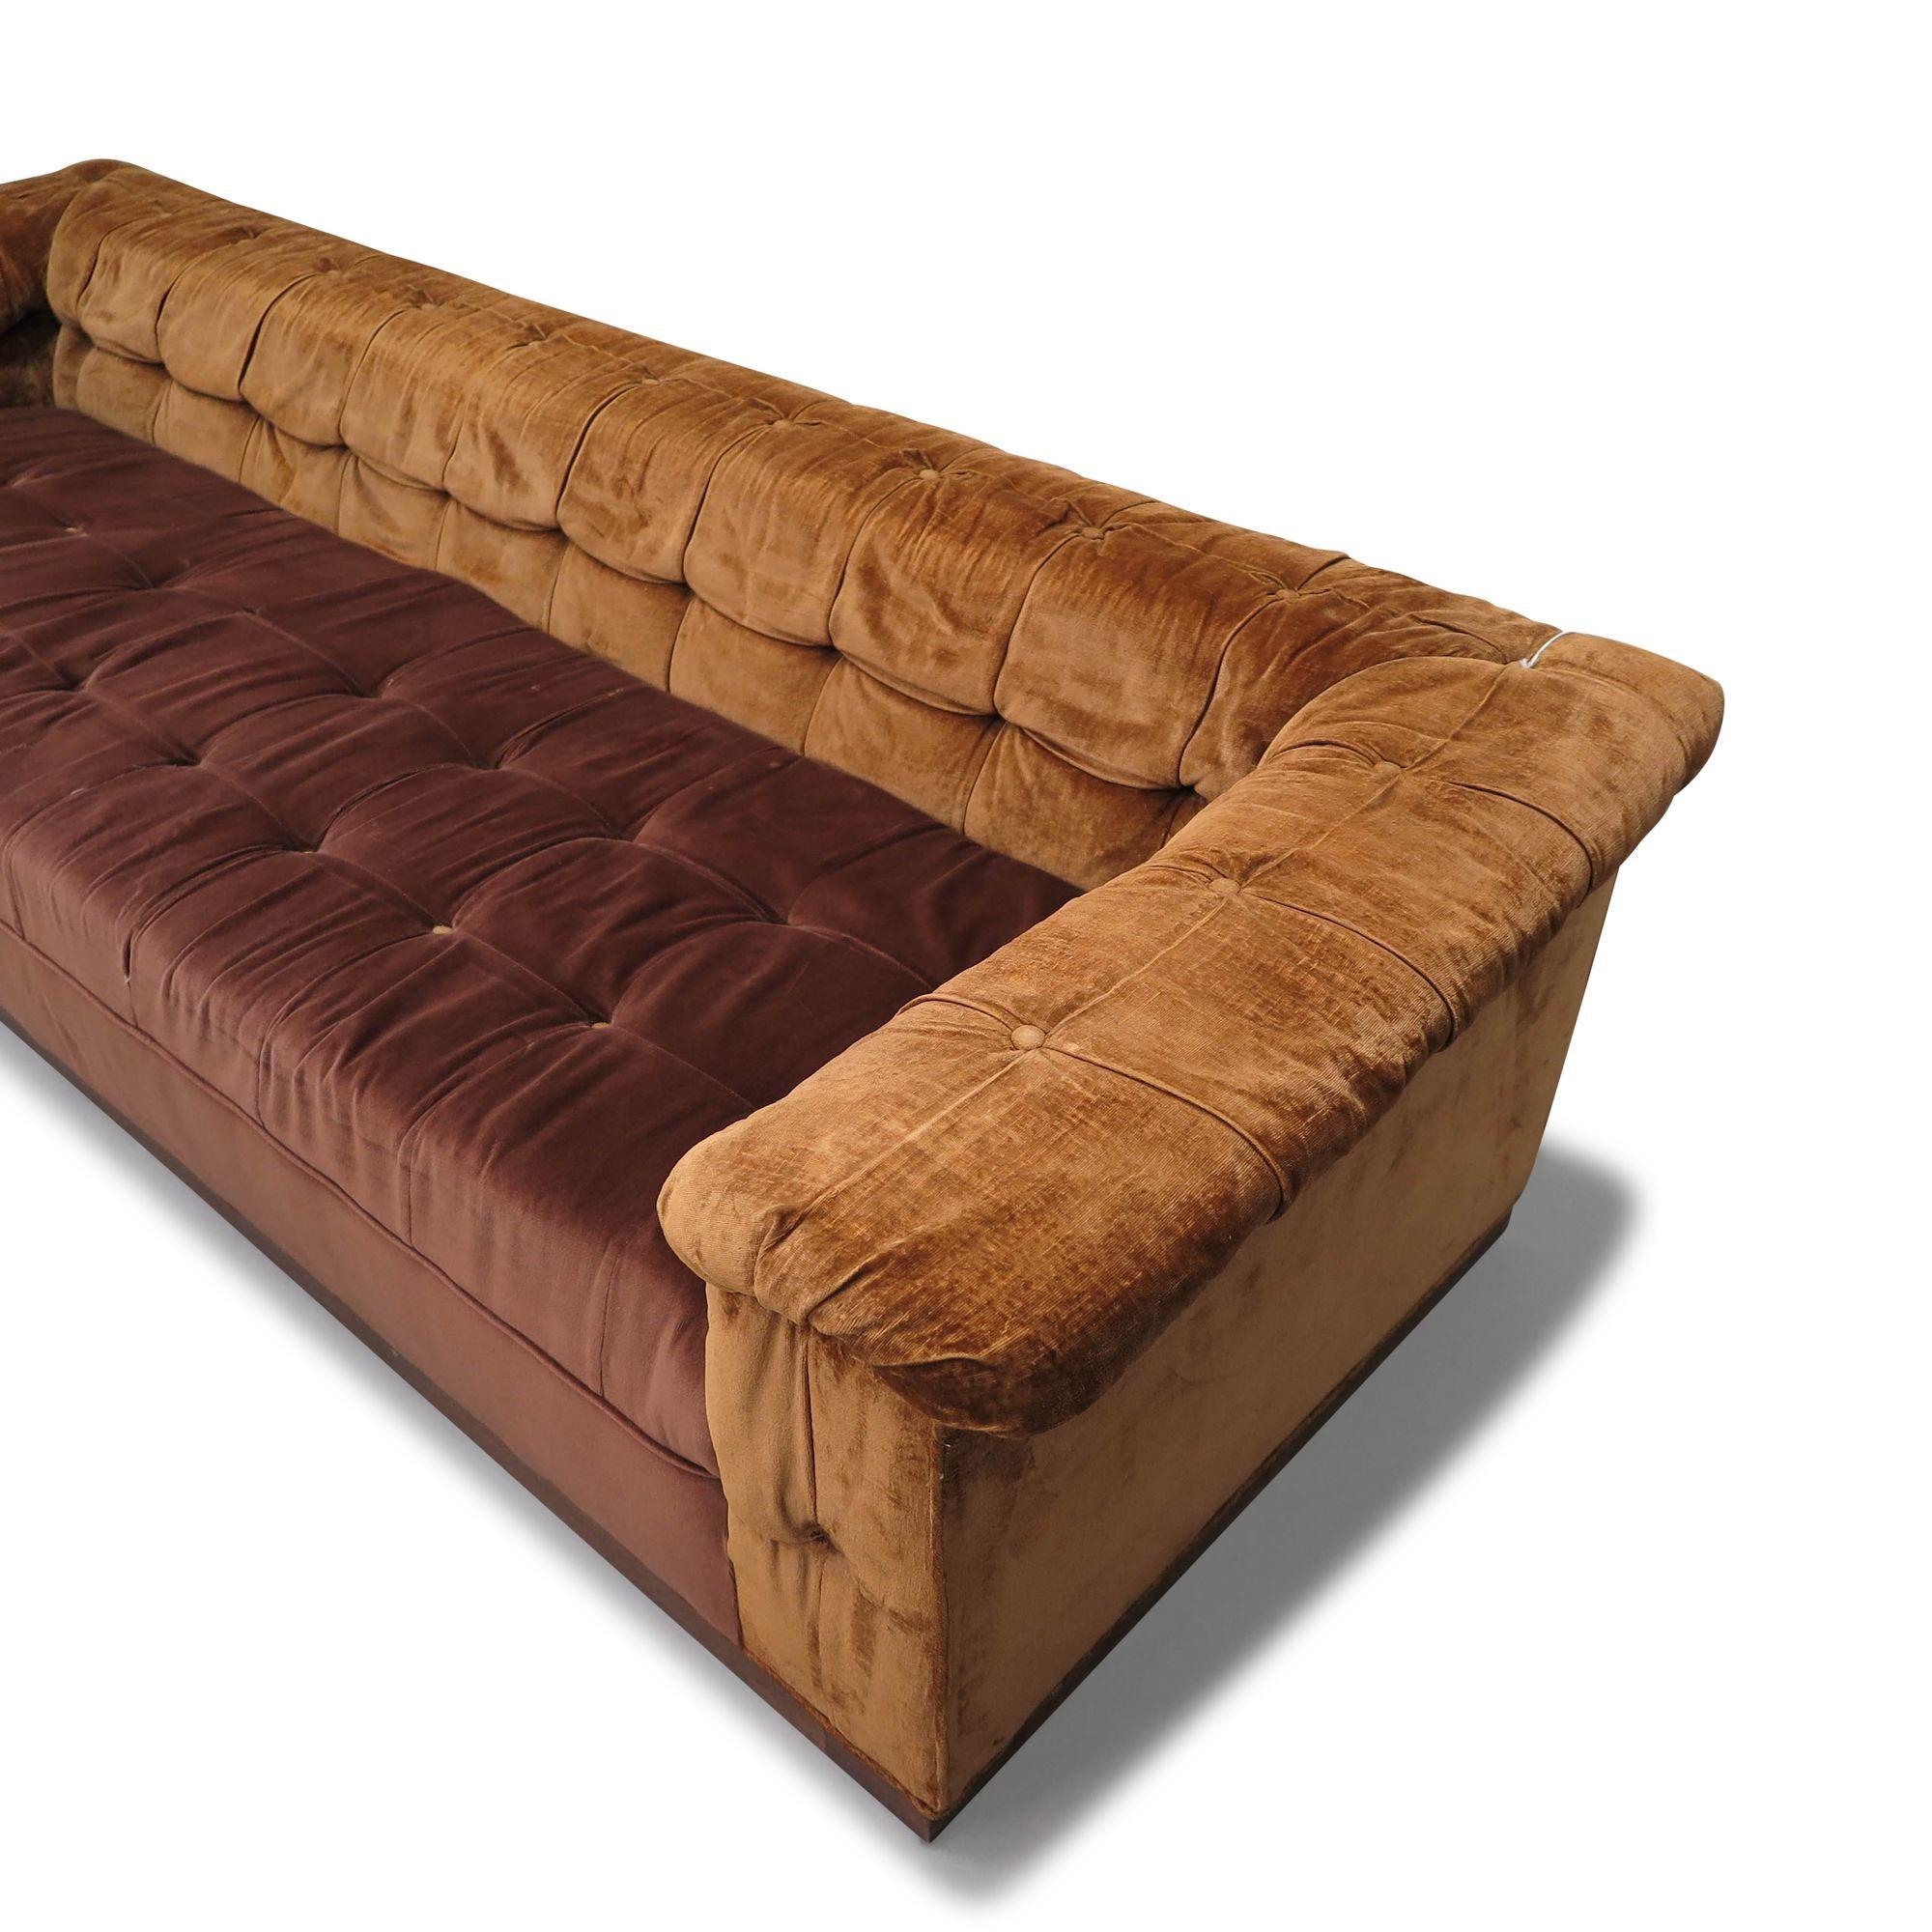 Canapé du milieu du siècle conçu par Edward Wormley pour Dunbar, Party sofa, modèle 5407, États-Unis, 1950. Fabrice avec un cadre en bois massif et des sièges à ressorts intérieurs, ce canapé est tapissé dans son tissu original en velours marron et